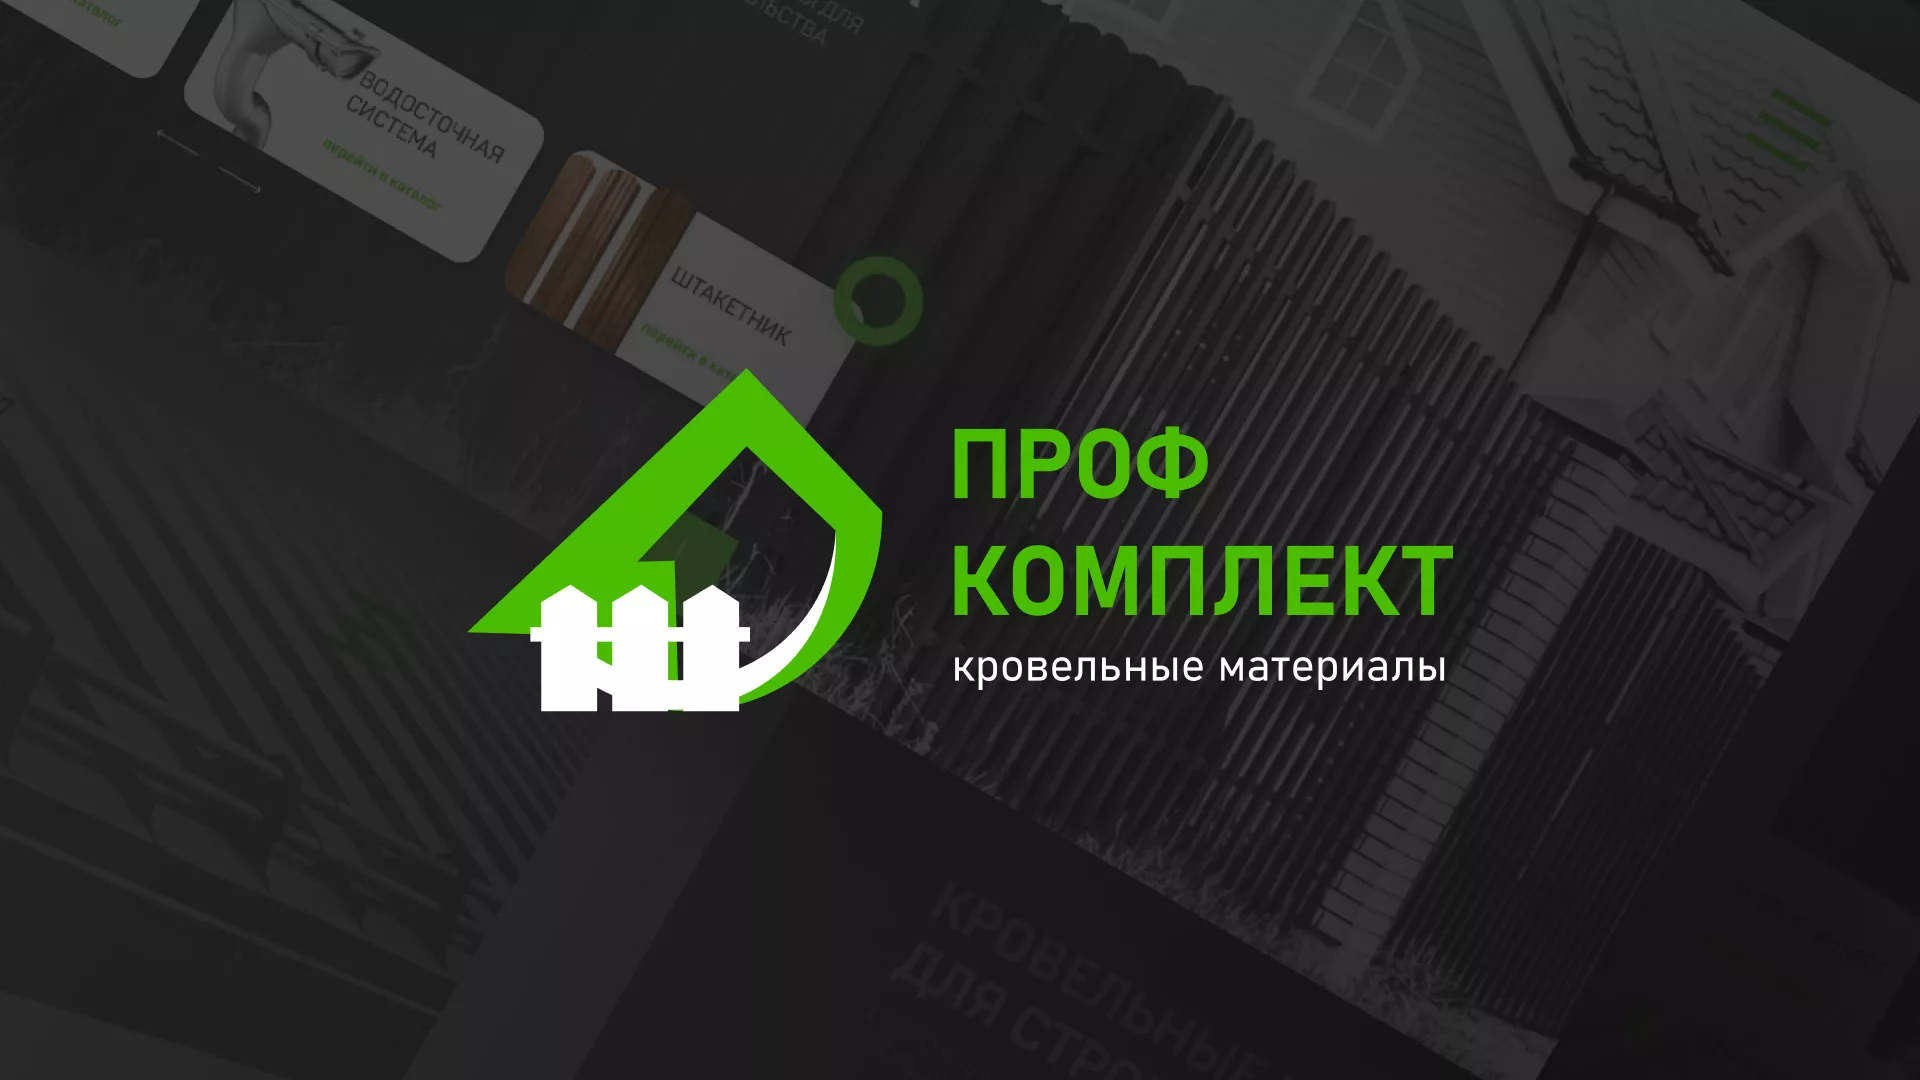 Создание сайта компании «Проф Комплект» в Омутнинске